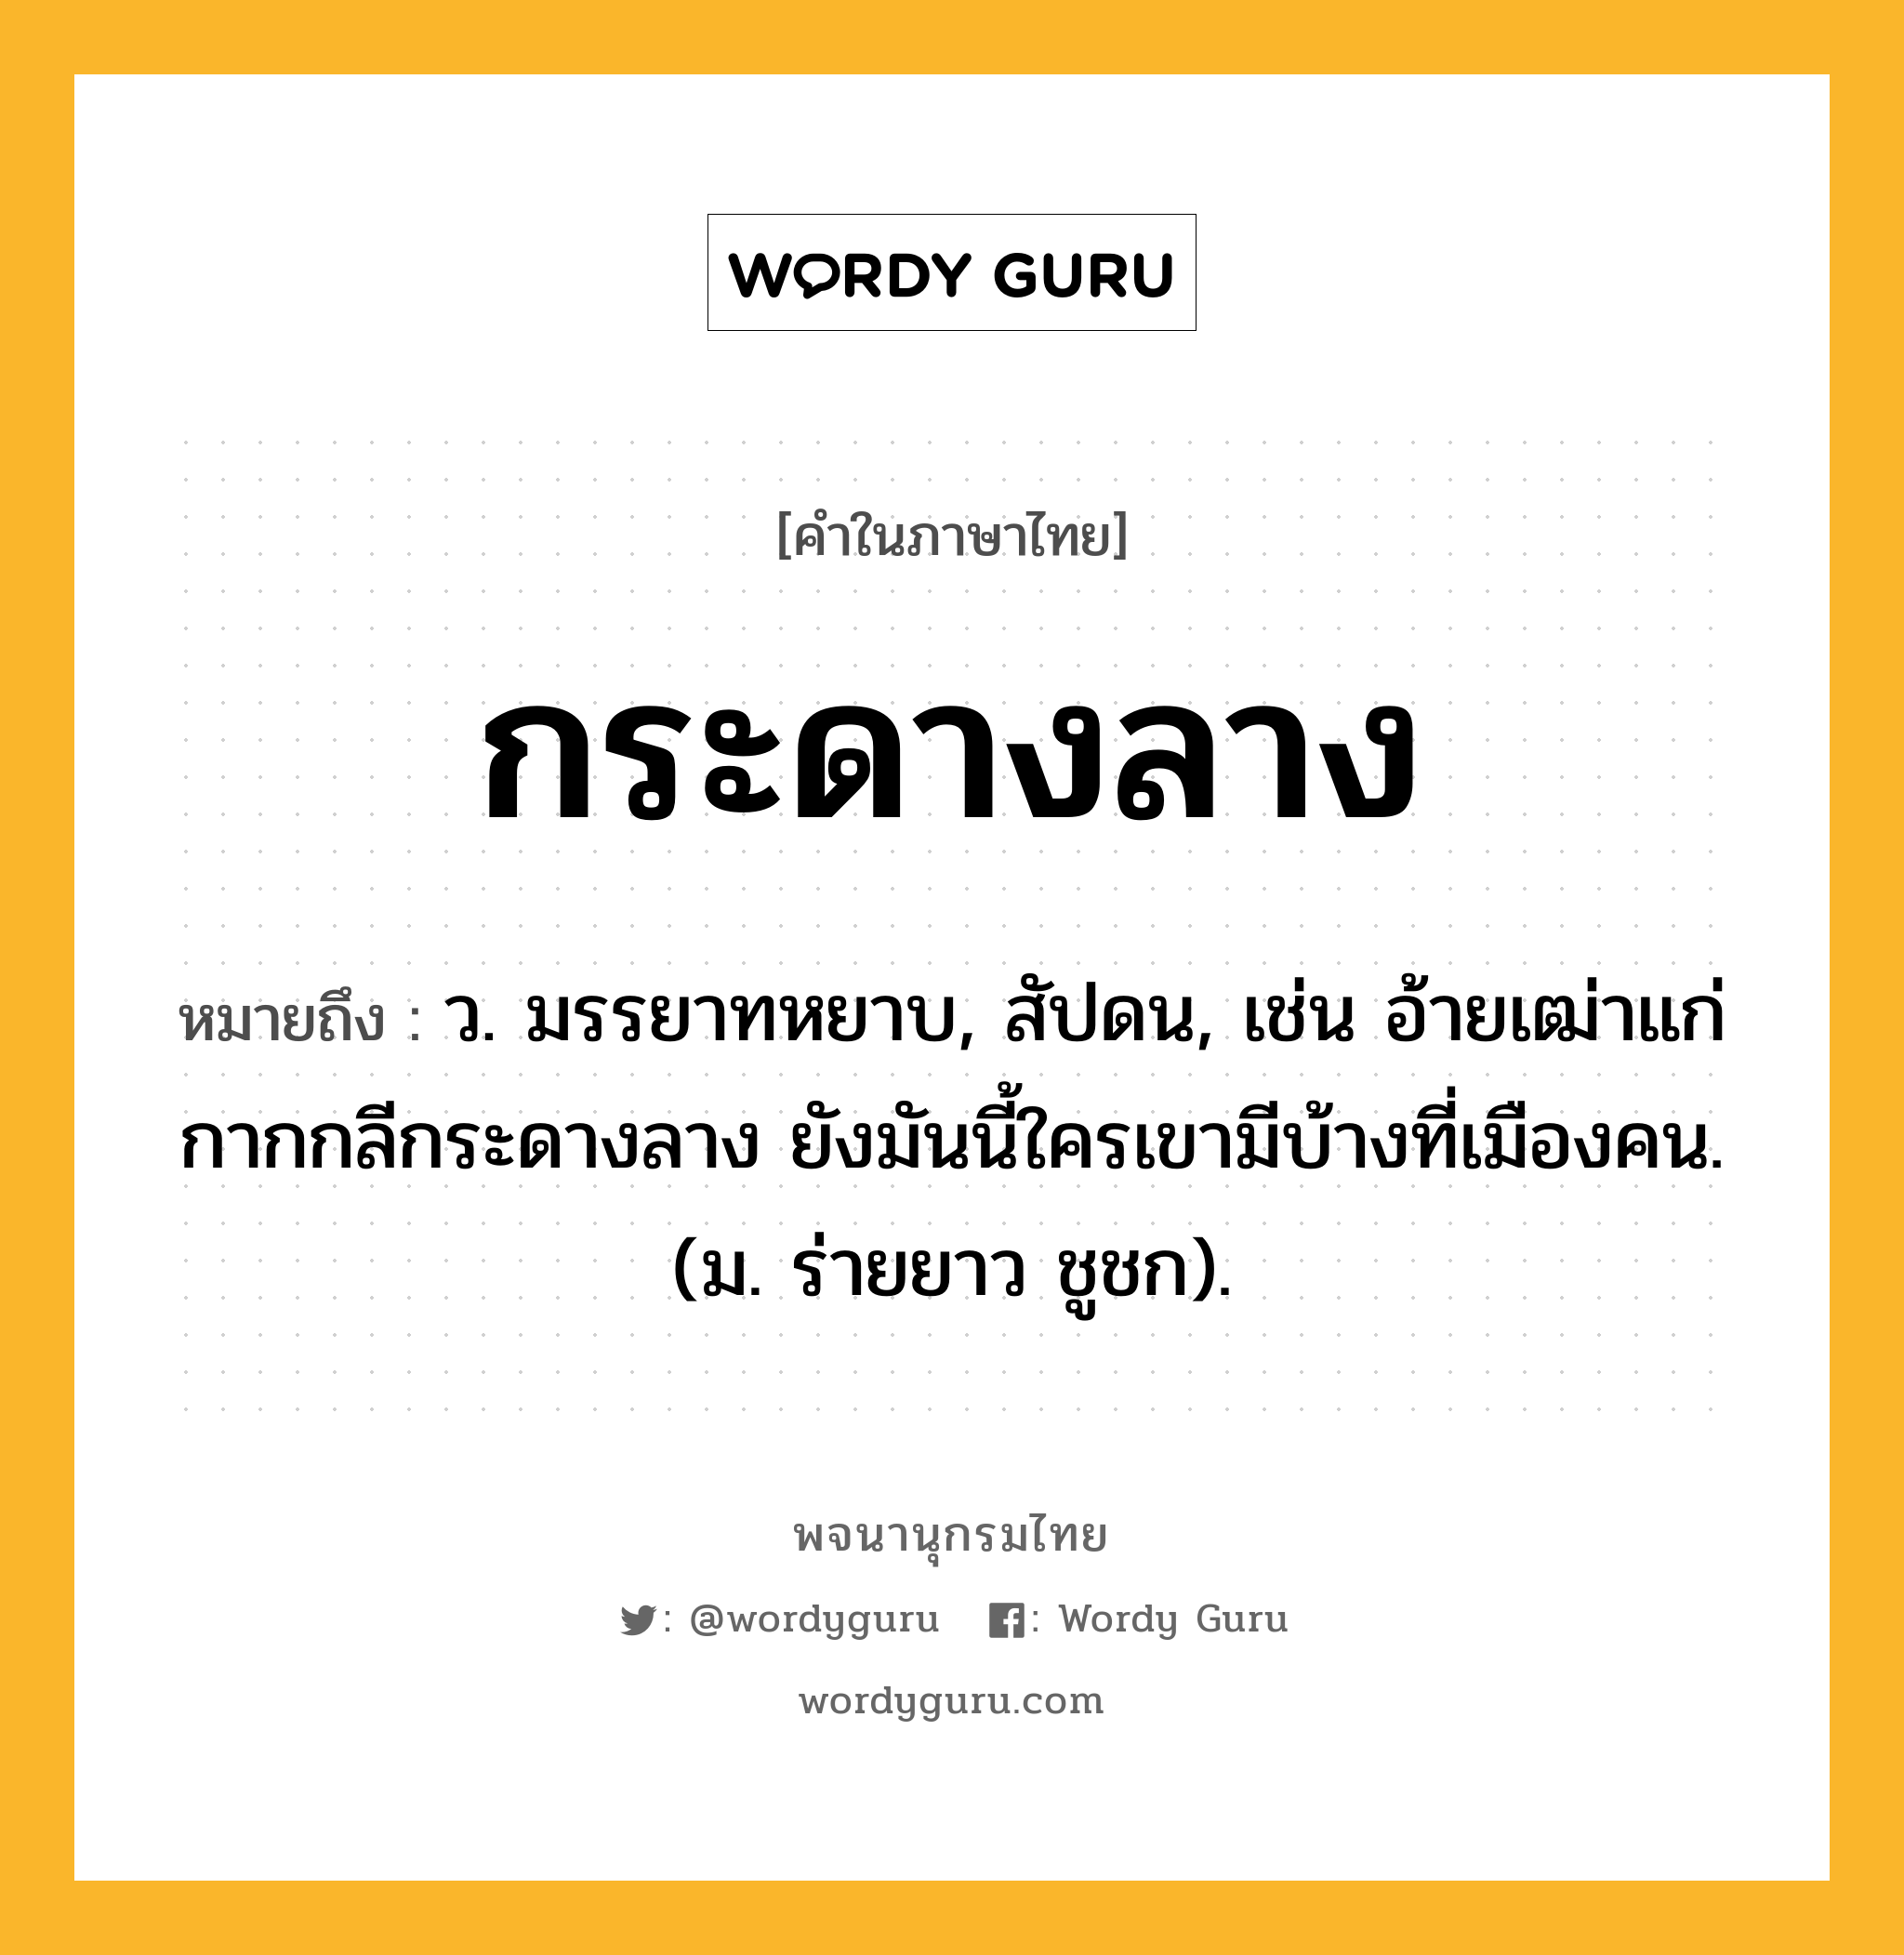 กระดางลาง ความหมาย หมายถึงอะไร?, คำในภาษาไทย กระดางลาง หมายถึง ว. มรรยาทหยาบ, สัปดน, เช่น อ้ายเฒ่าแก่กากกลีกระดางลาง ยังมันนี้ใครเขามีบ้างที่เมืองคน. (ม. ร่ายยาว ชูชก).